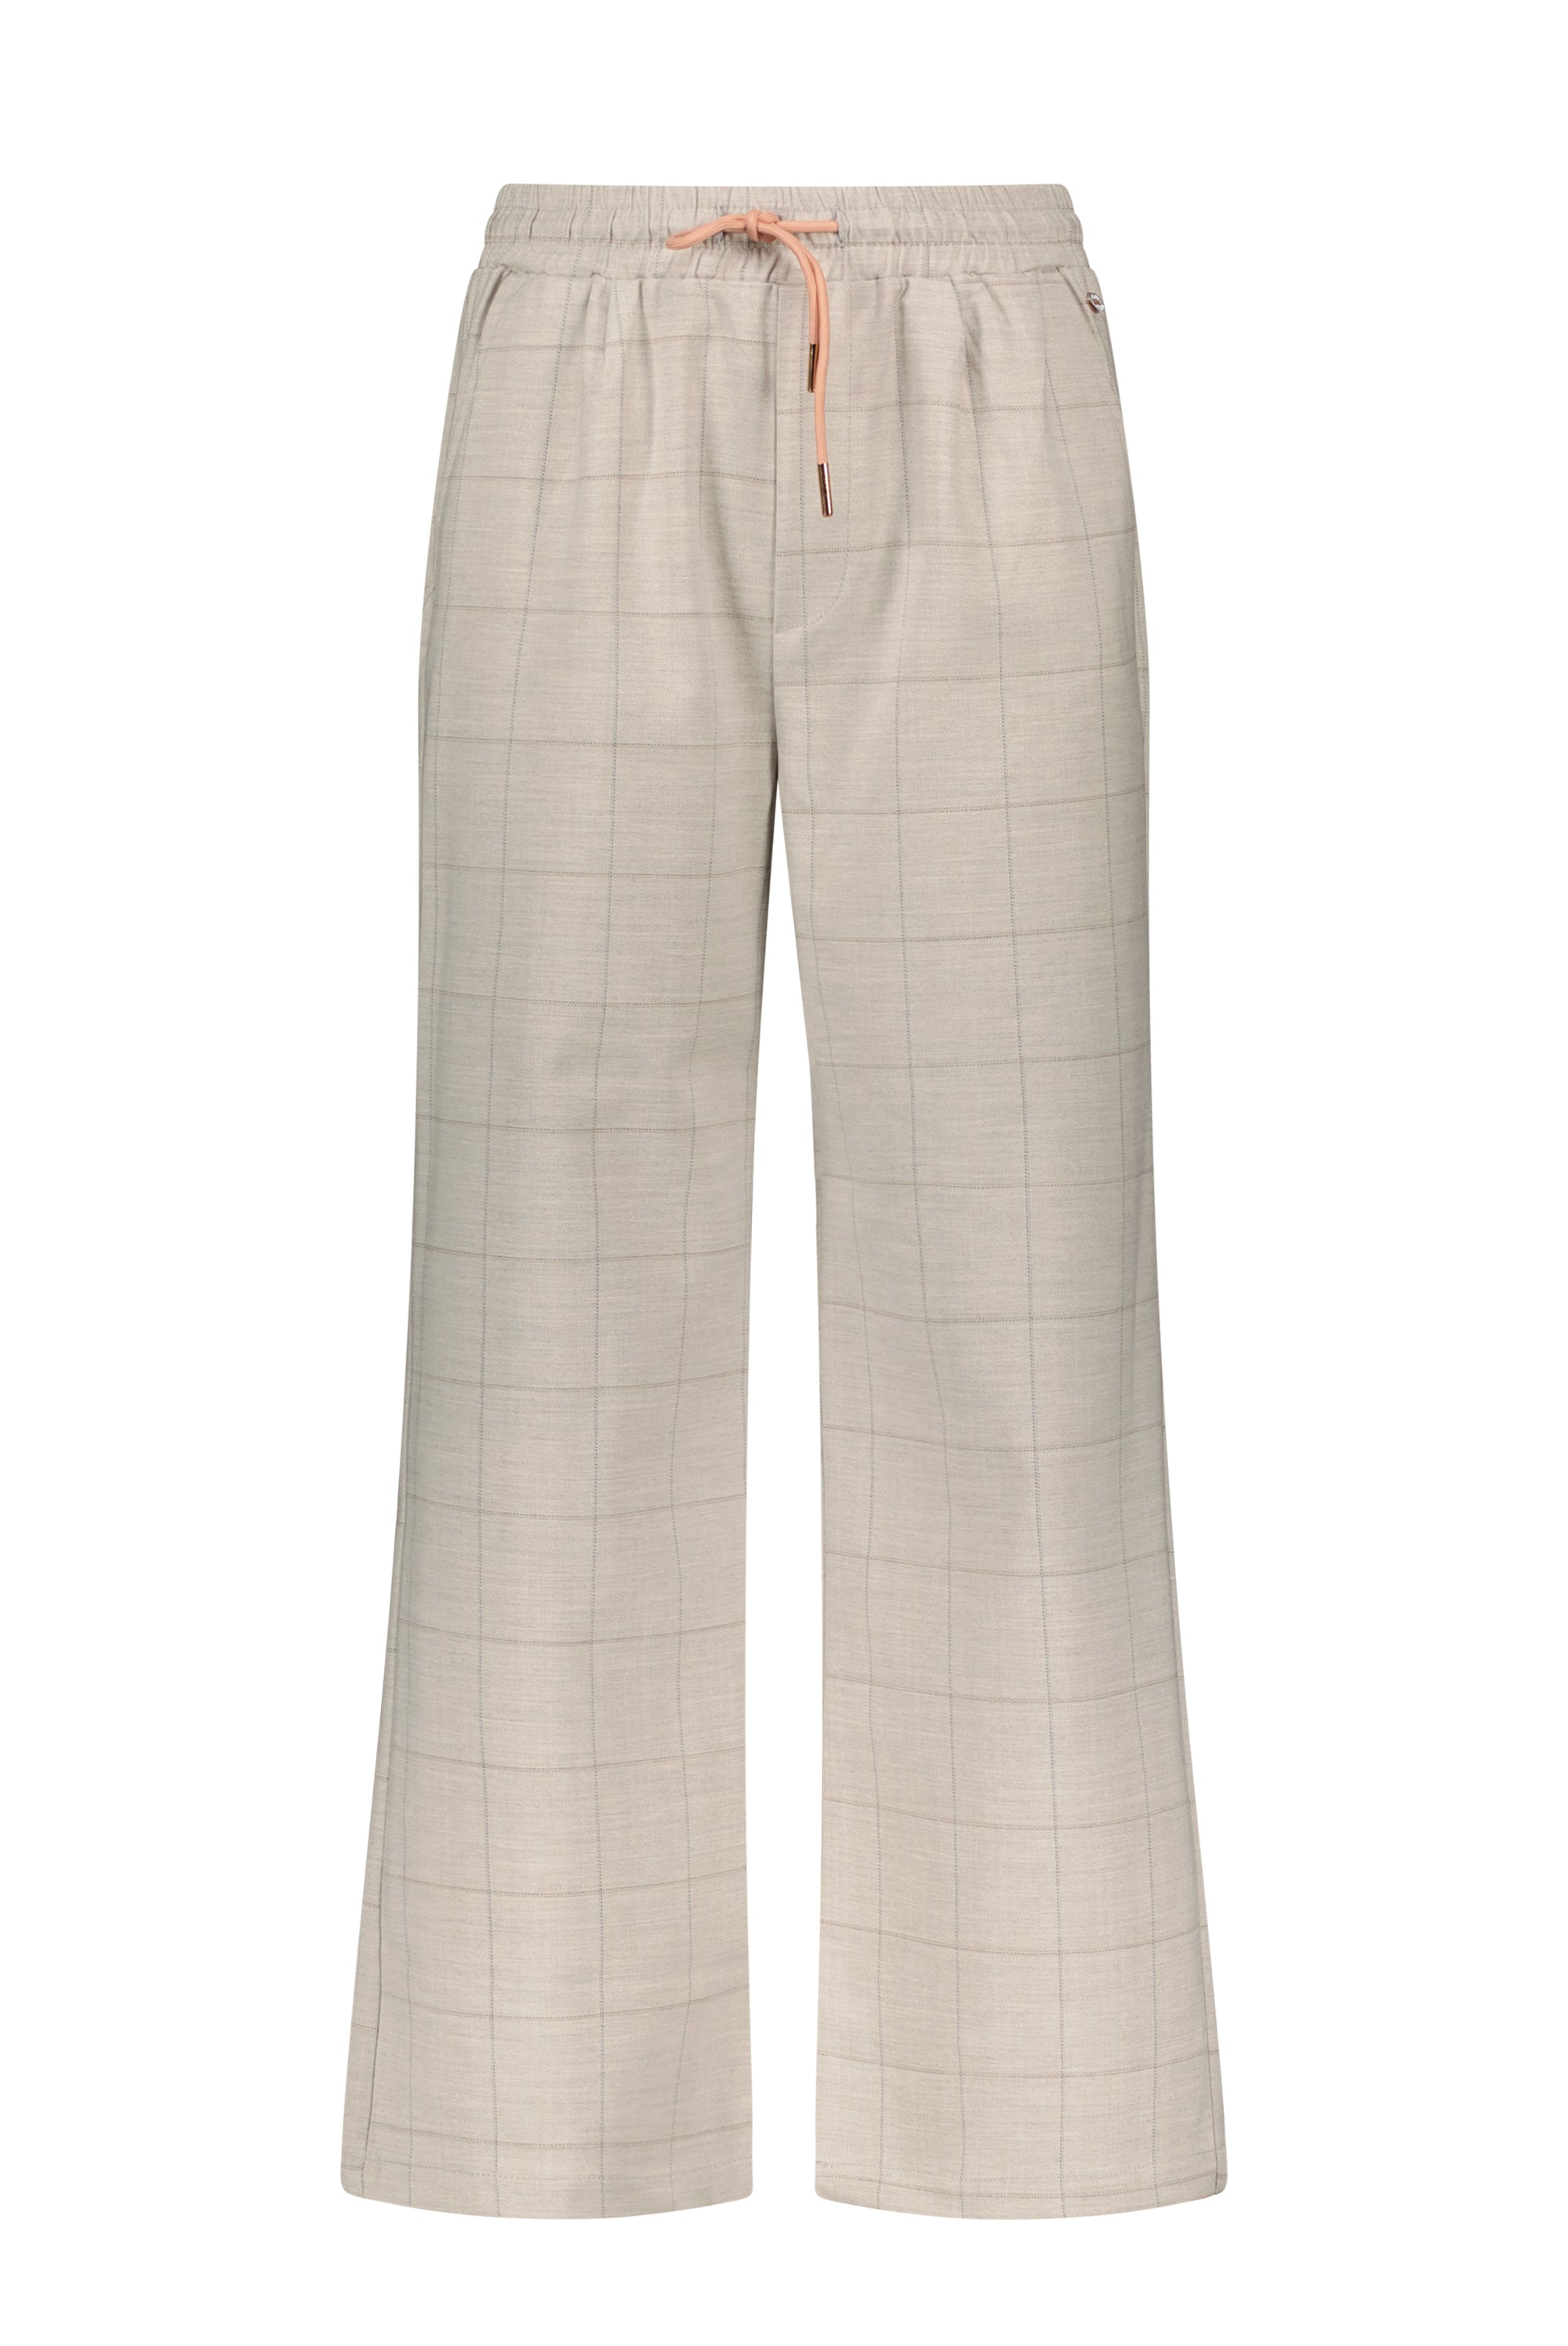 Meisjes Sayla palazzo checkered pants van  in de kleur Pearl in maat 170-176.